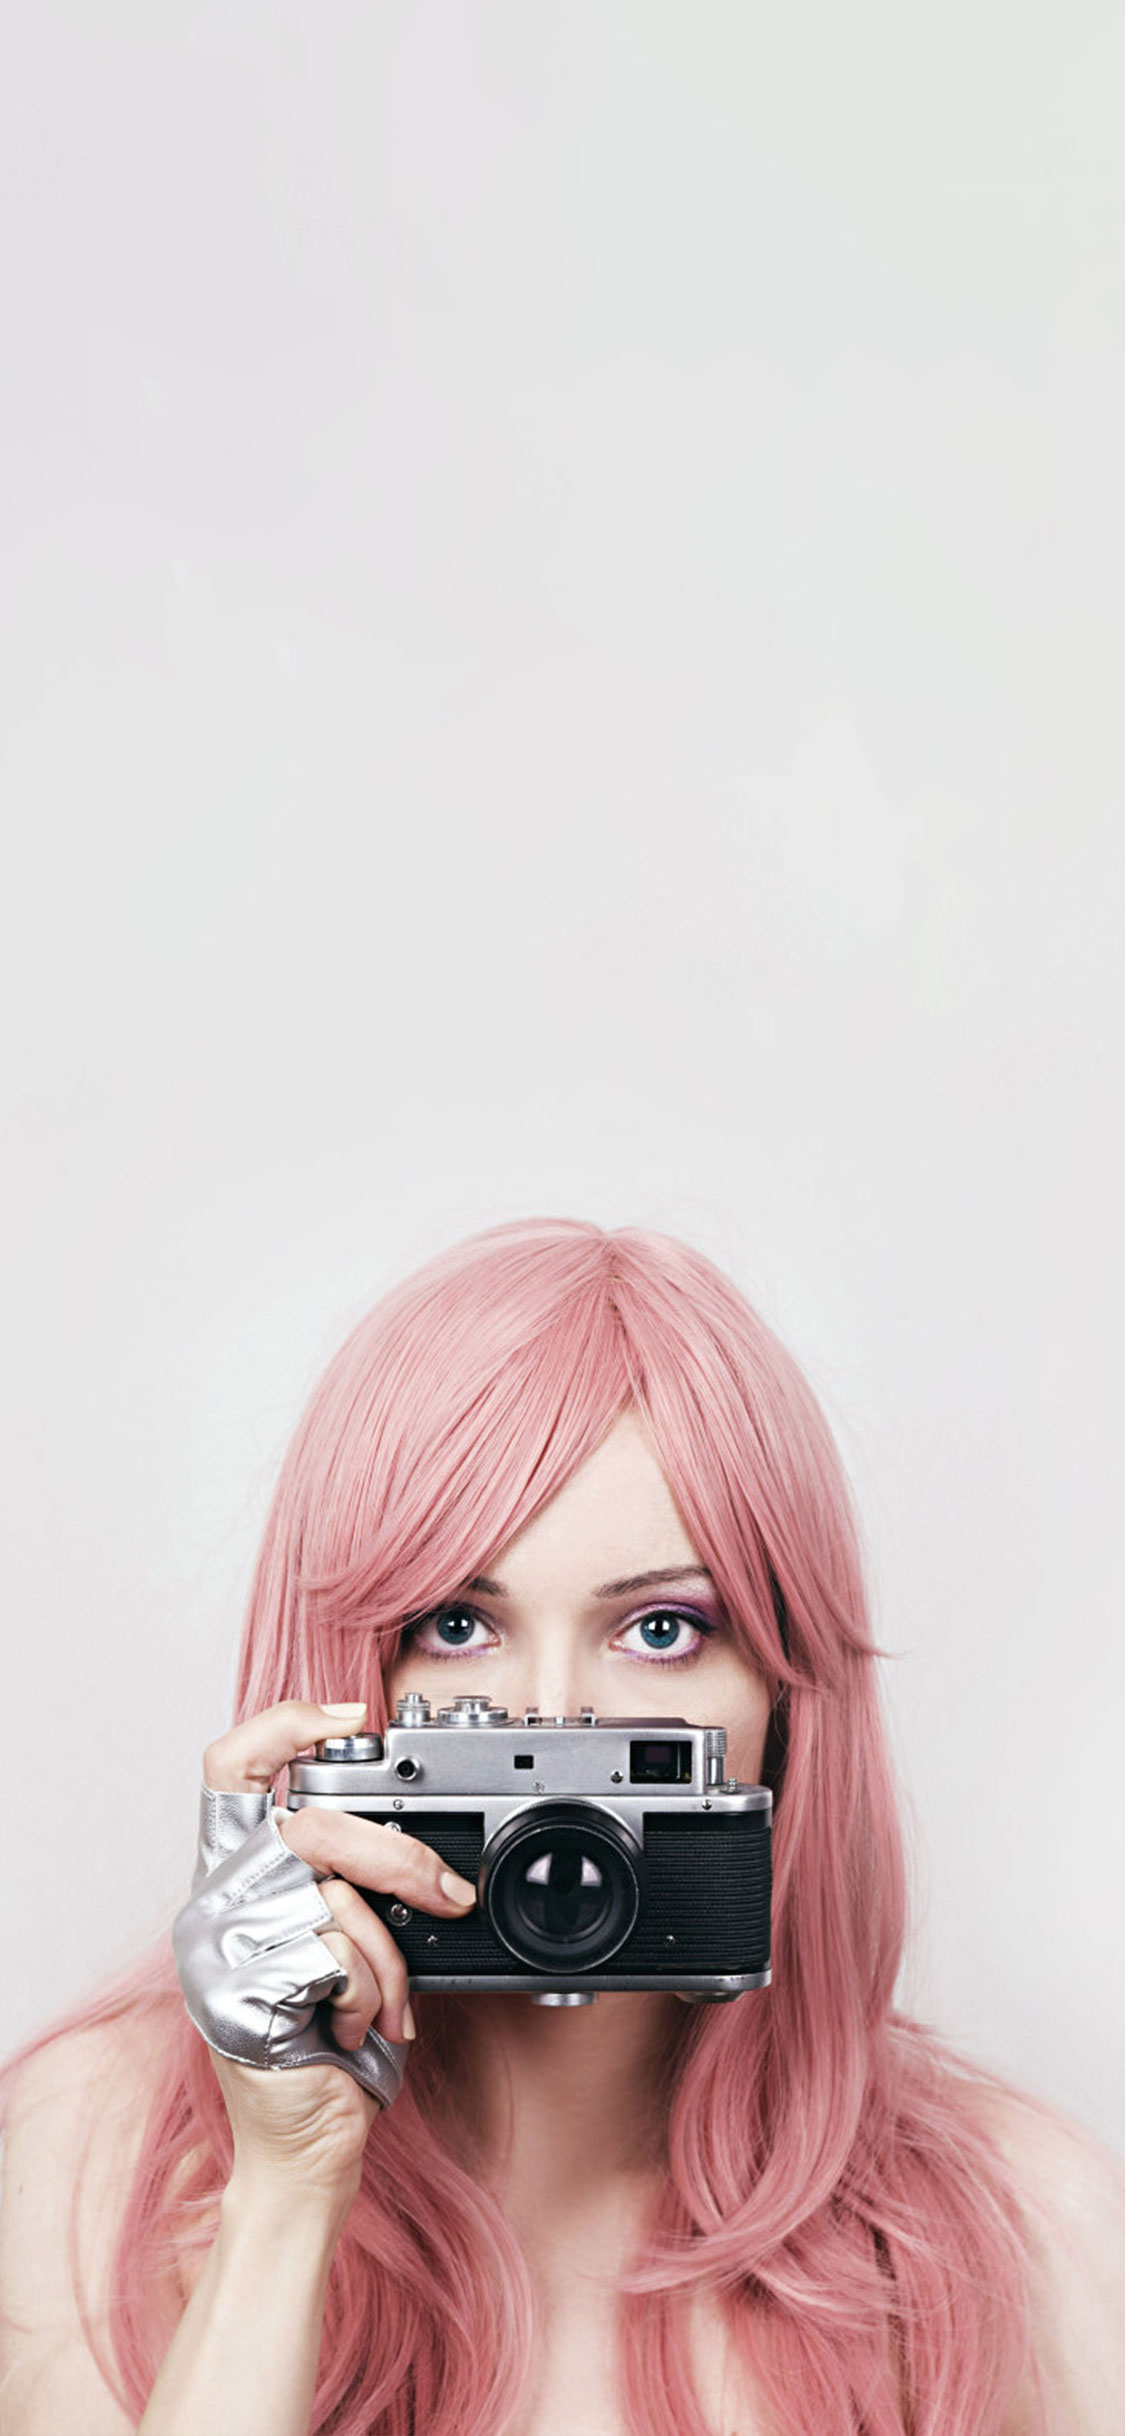 女の子のためのかわいい壁紙,ヘア,ピンク,写真,ブロンド,写真撮影